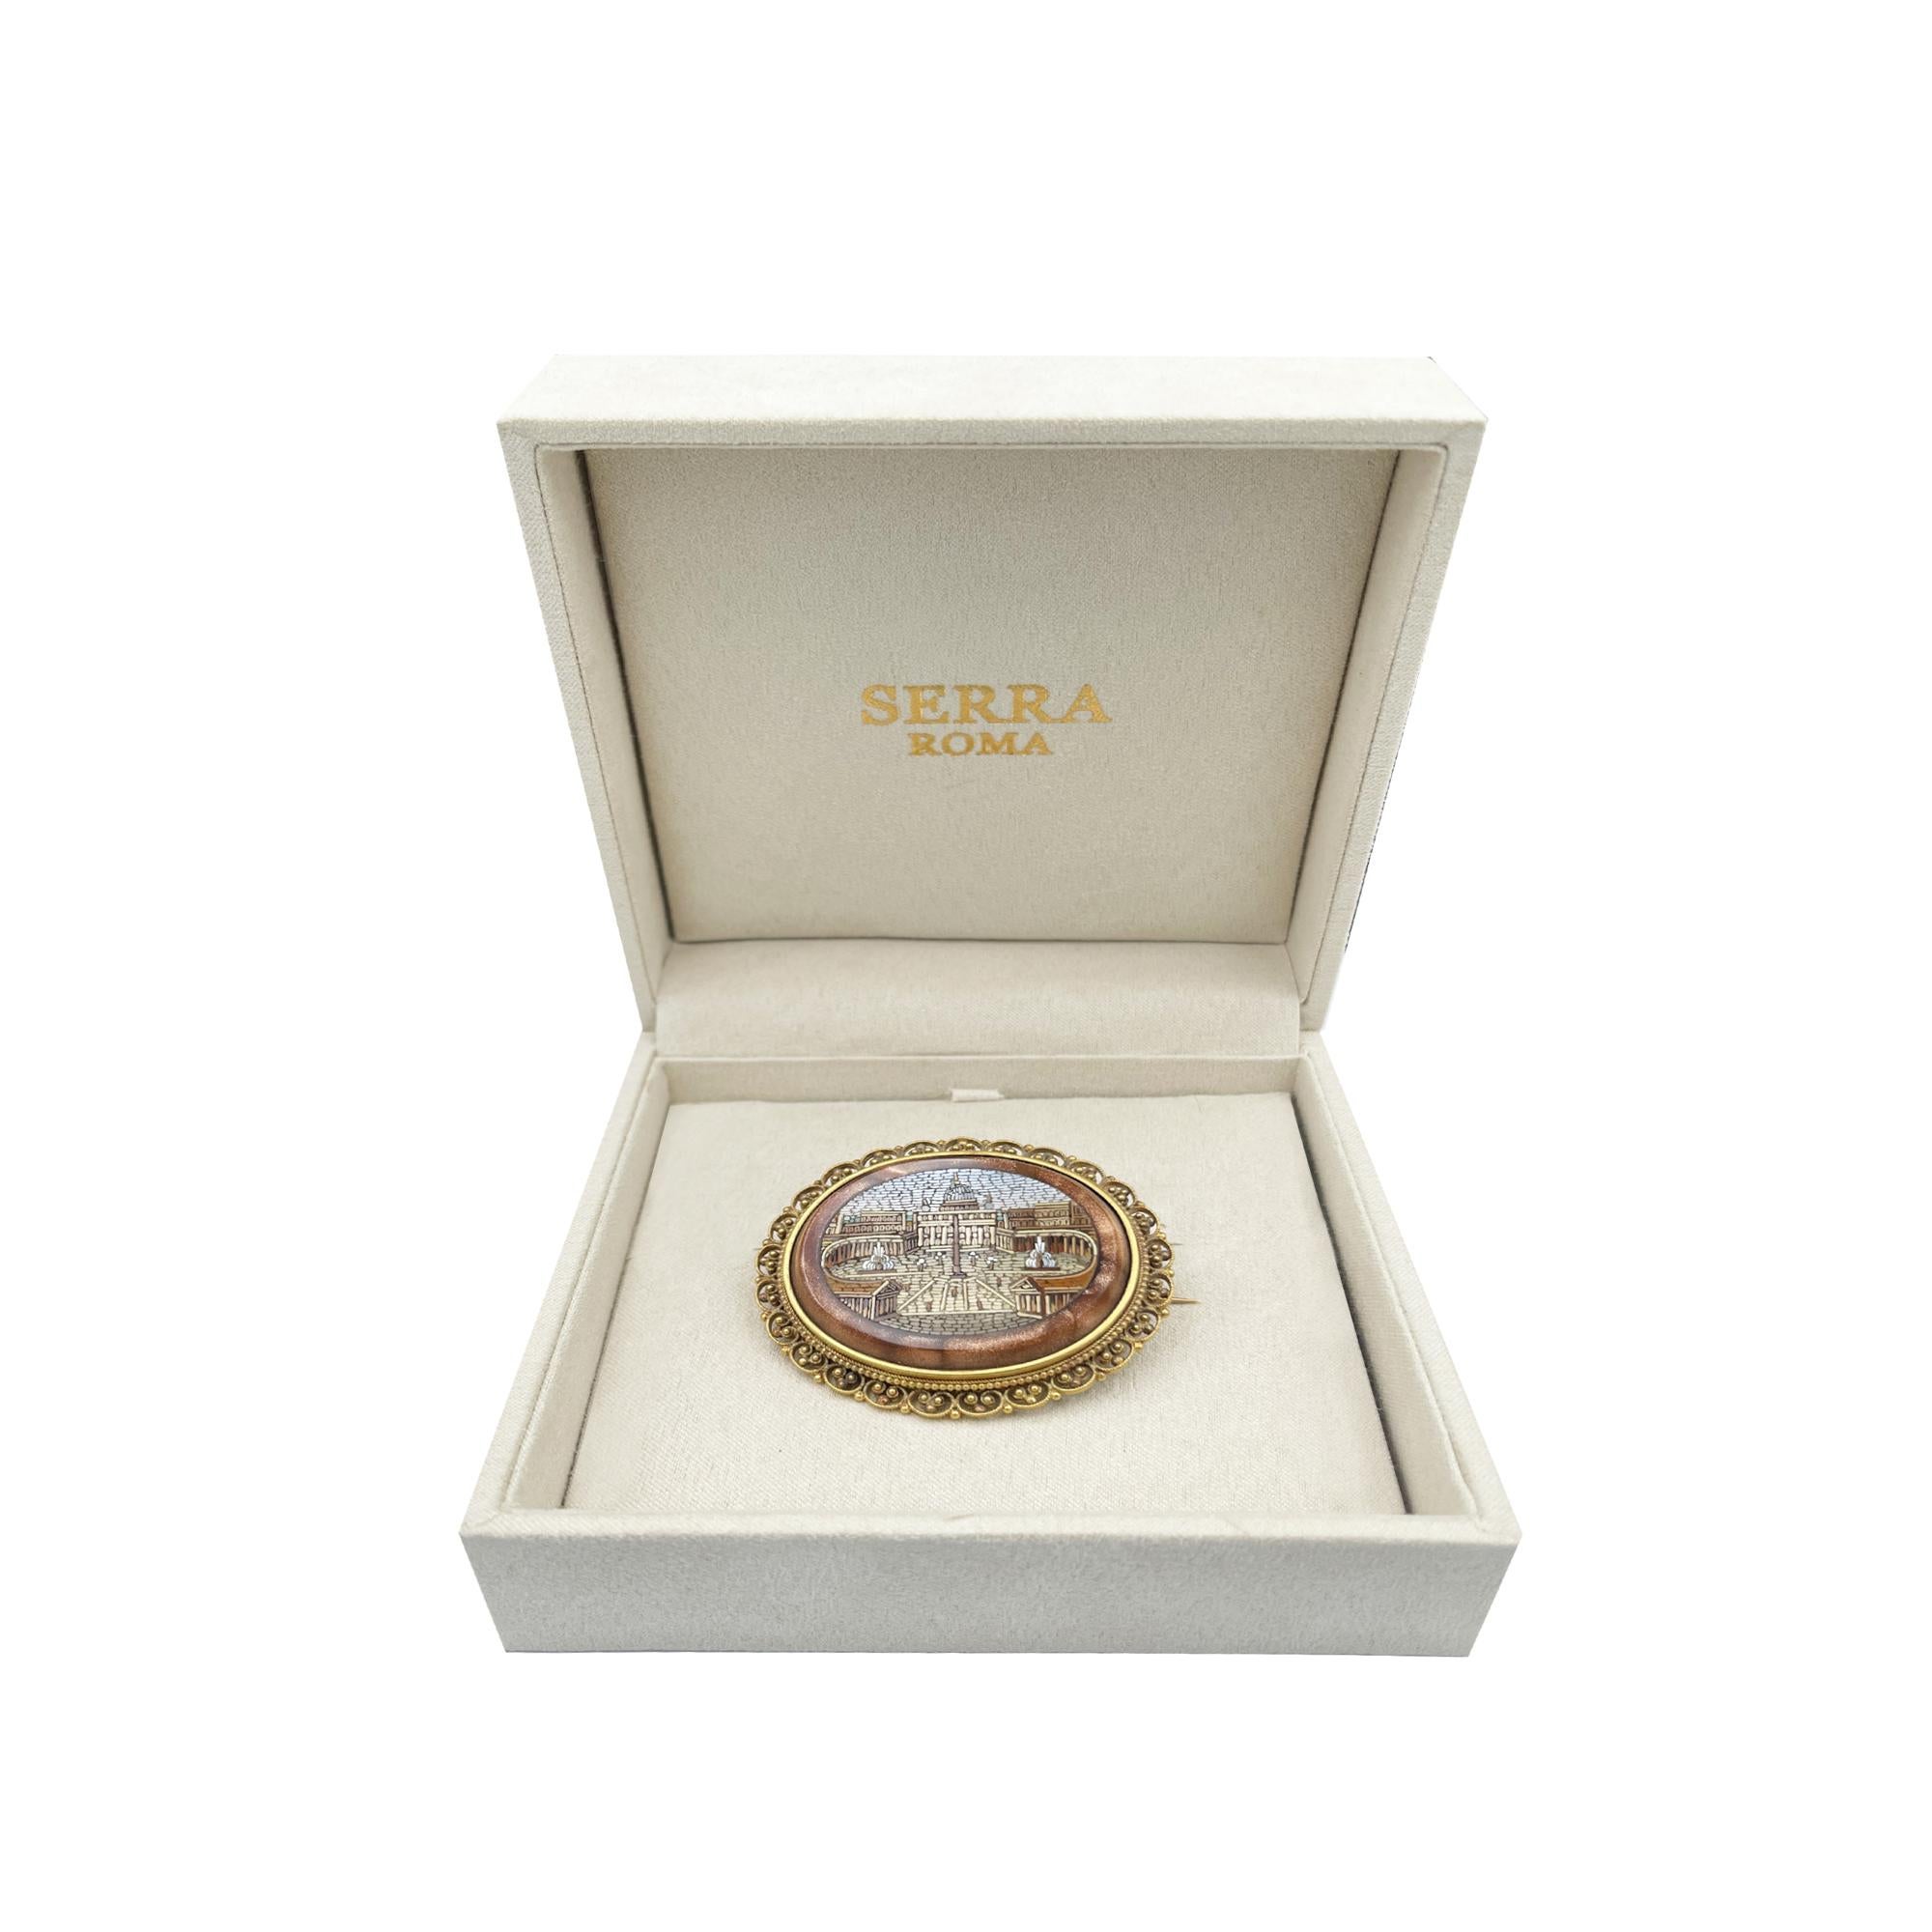 Cette broche en or 18 kt est sertie d'une belle micromosaïque (vers 1850) représentant la basilique Saint-Pierre.
Le 